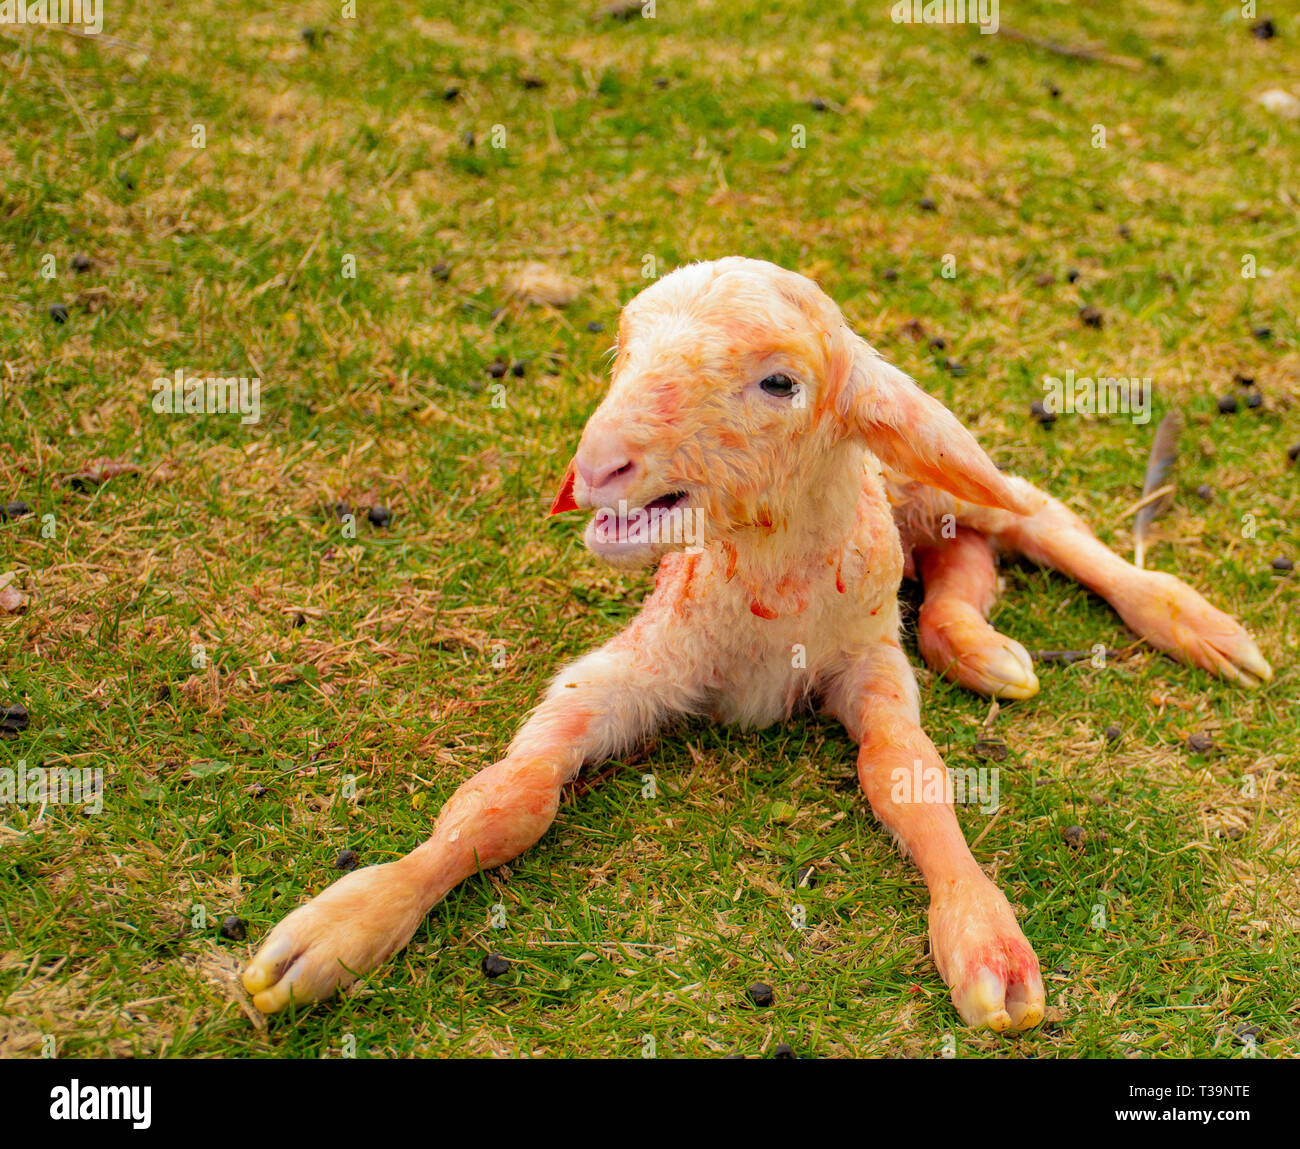 Newborn baby sheep Stock Photo